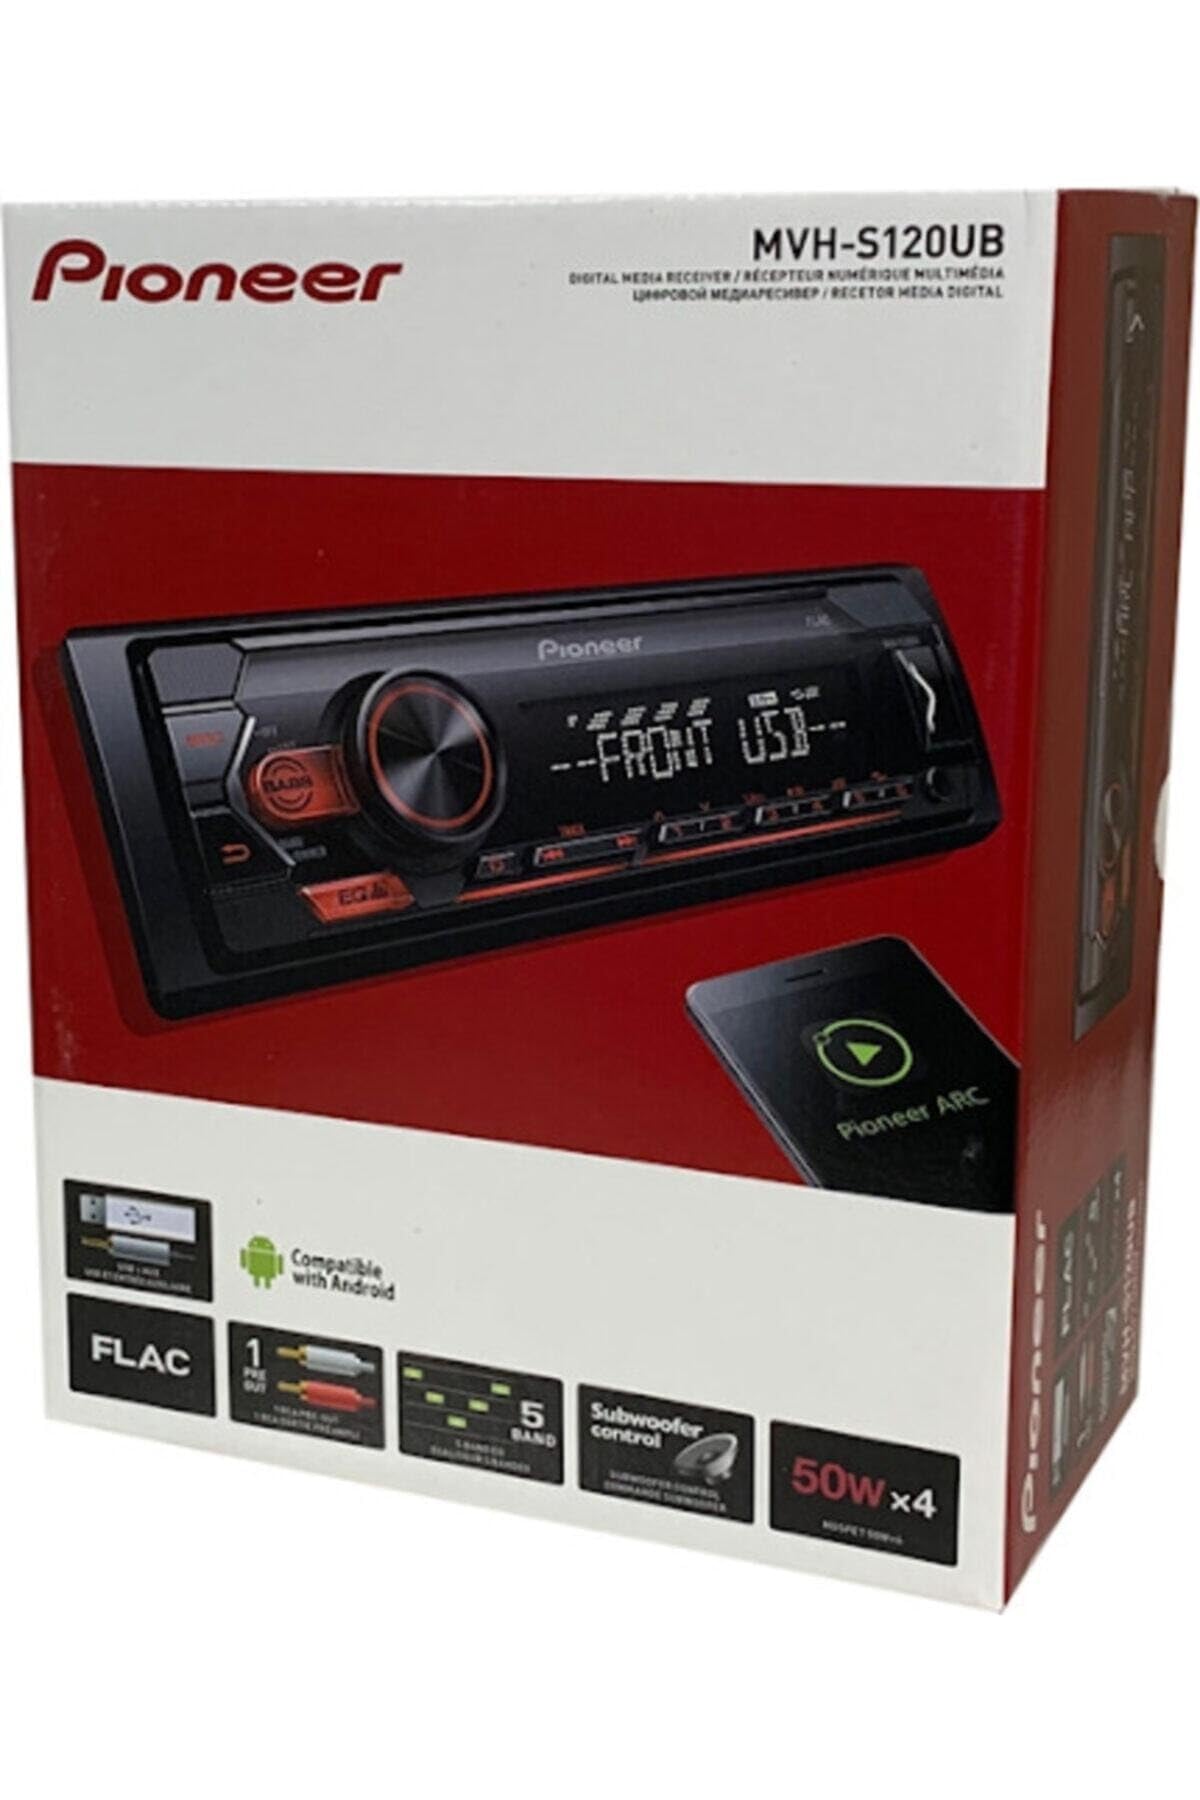 Pioneer MVH-S120UB | 1DIN Autoradio mit RDS | rot | halbe Einbautiefe | 4x50Watt | USB | MP3 | AUX-Eingang | Android-Unterstützung | 5-Band Equalizer | ARC App